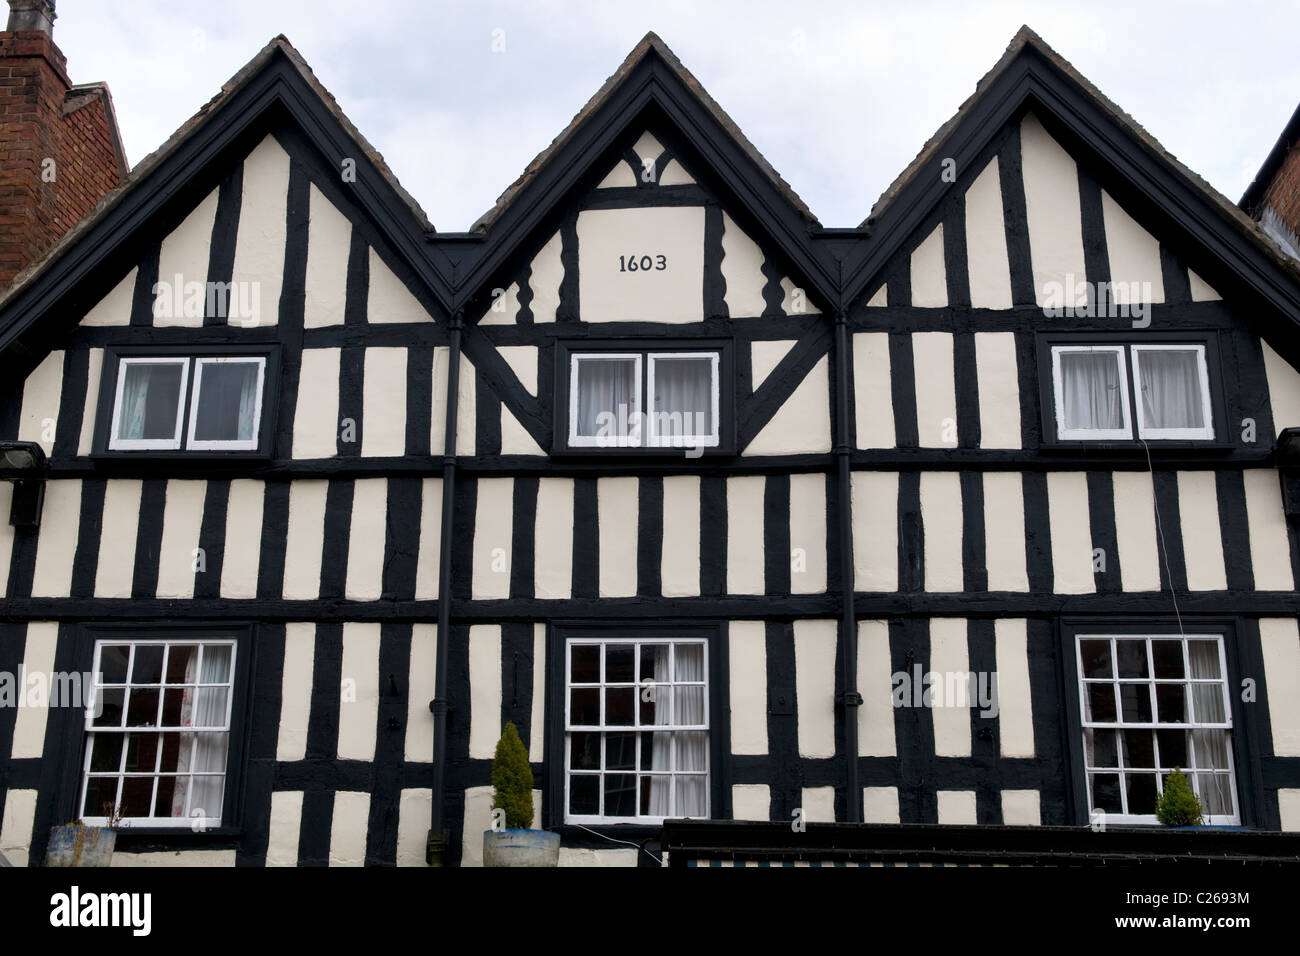 Vieux bâtiment tudor sur rue principale, UN4104, Upton sur Severn, Worcestershire, Angleterre, RU Banque D'Images